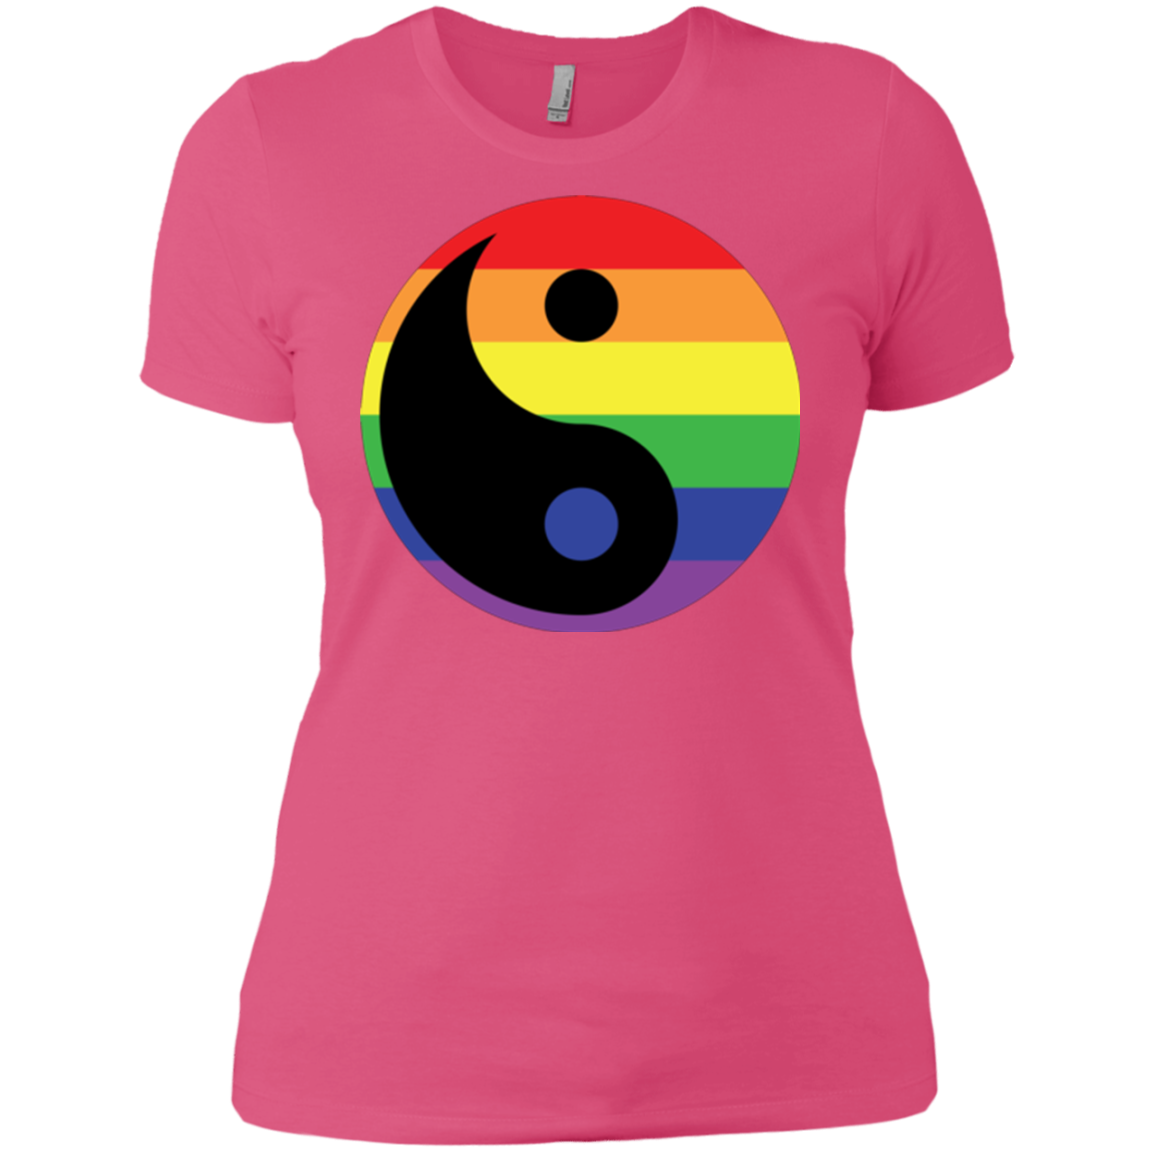 Rainbow Yin Yang Gay Pride Shirt LGBT Pride pink womens shirt